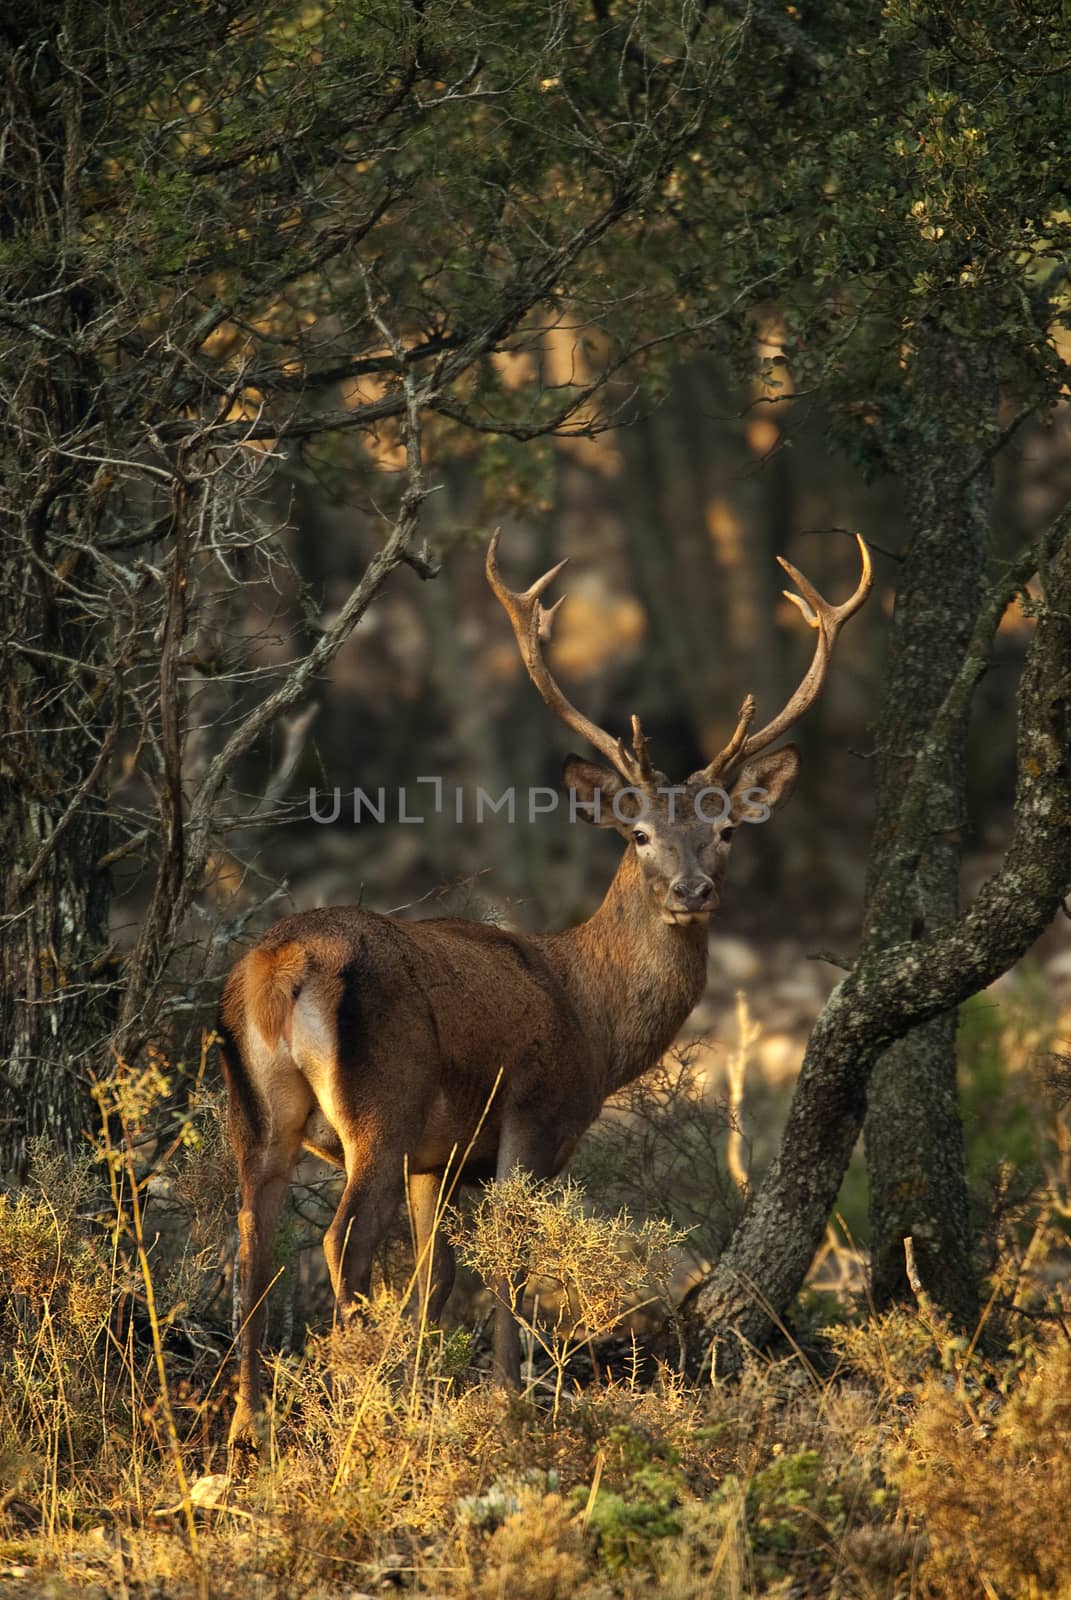 Red deer, Cervus elaphus, Wild by jalonsohu@gmail.com